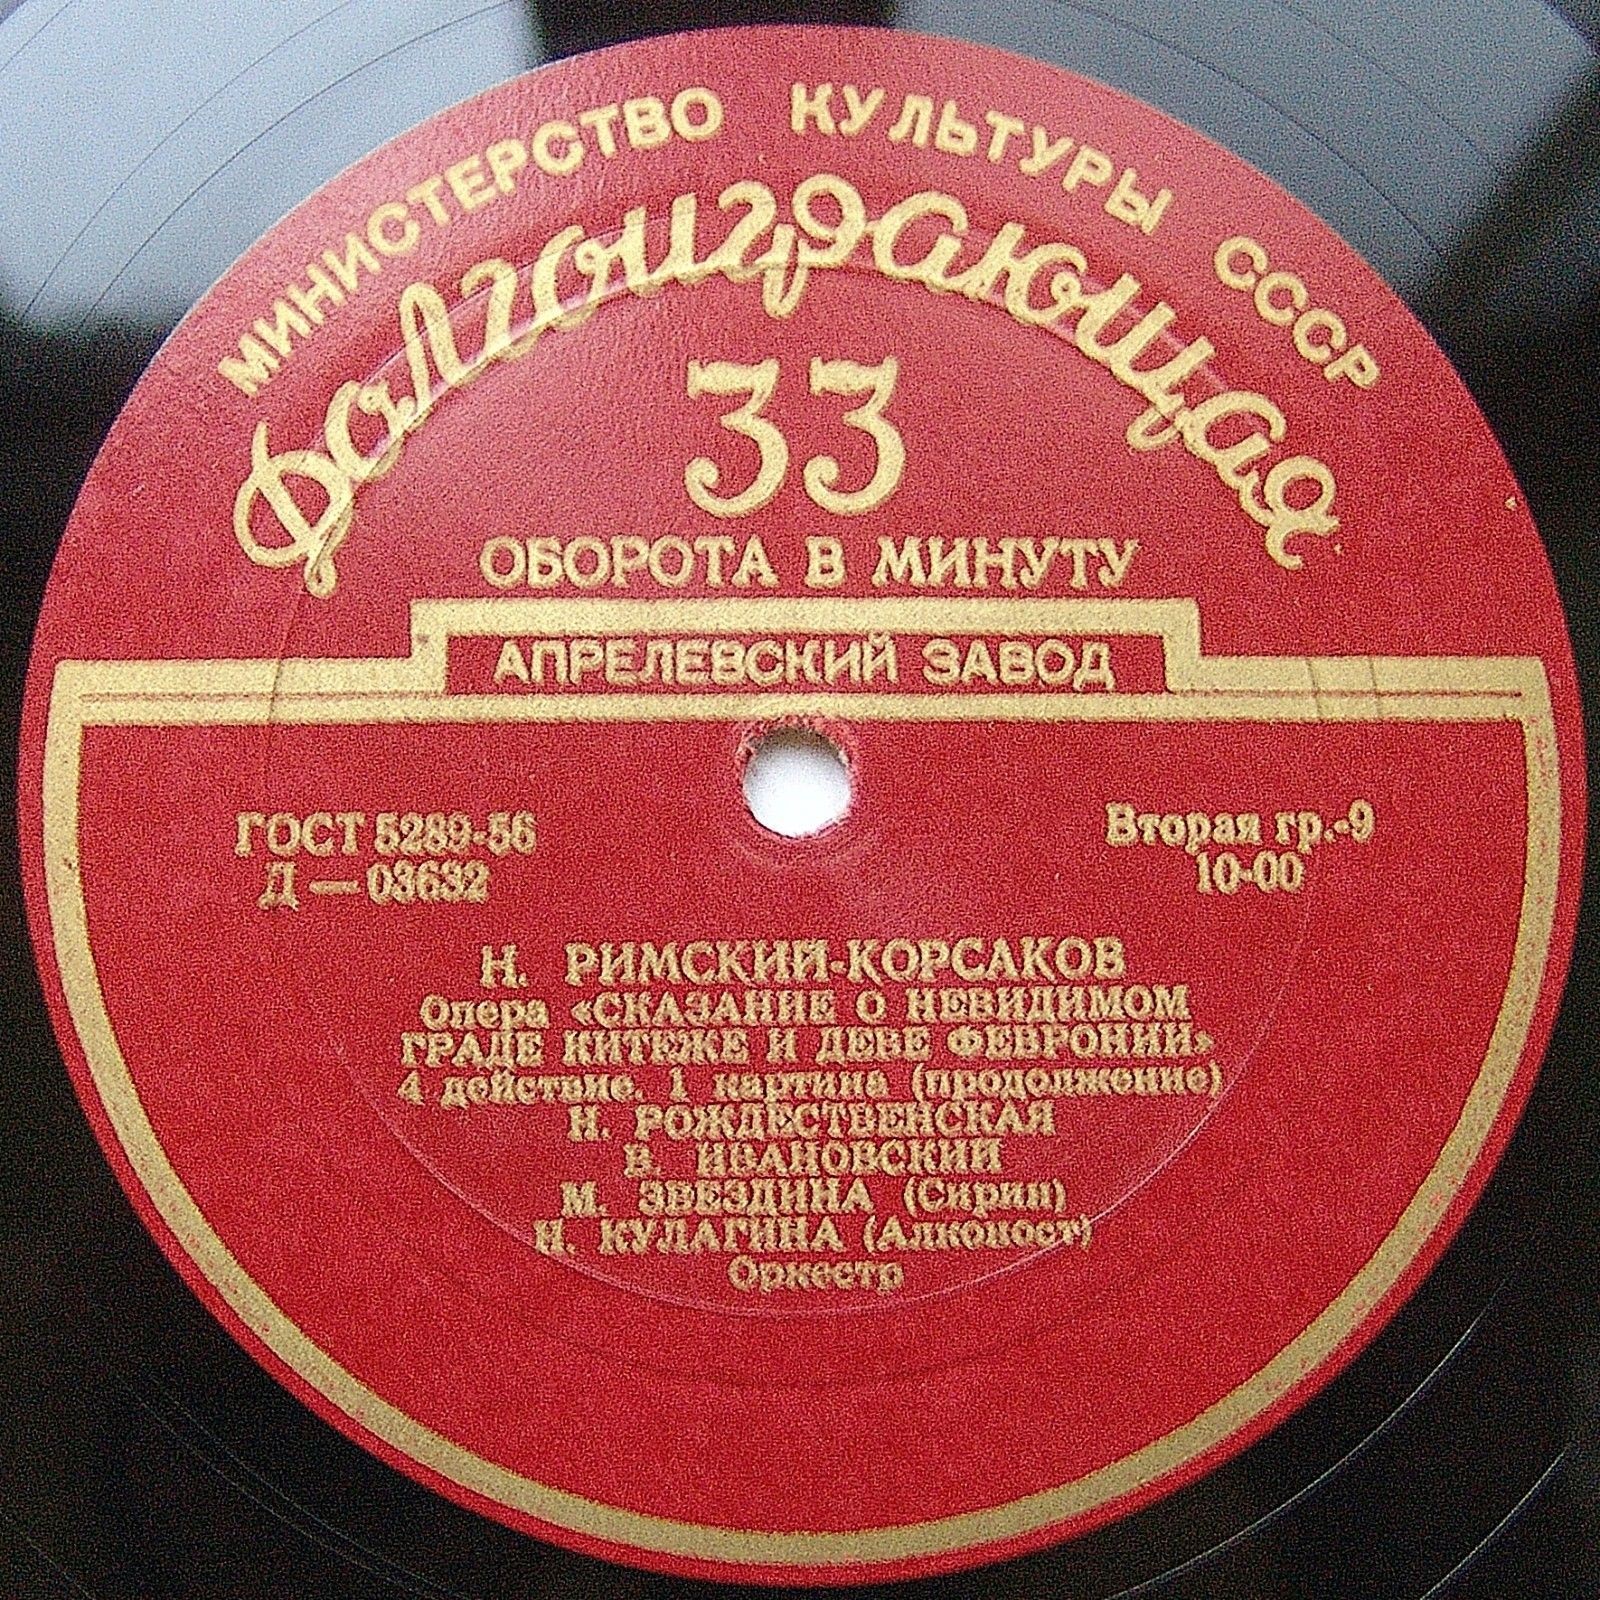 Н. РИМСКИЙ-КОРСАКОВ (1844-1908): "Сказание о невидимом граде Китеже", опера в 4 д.